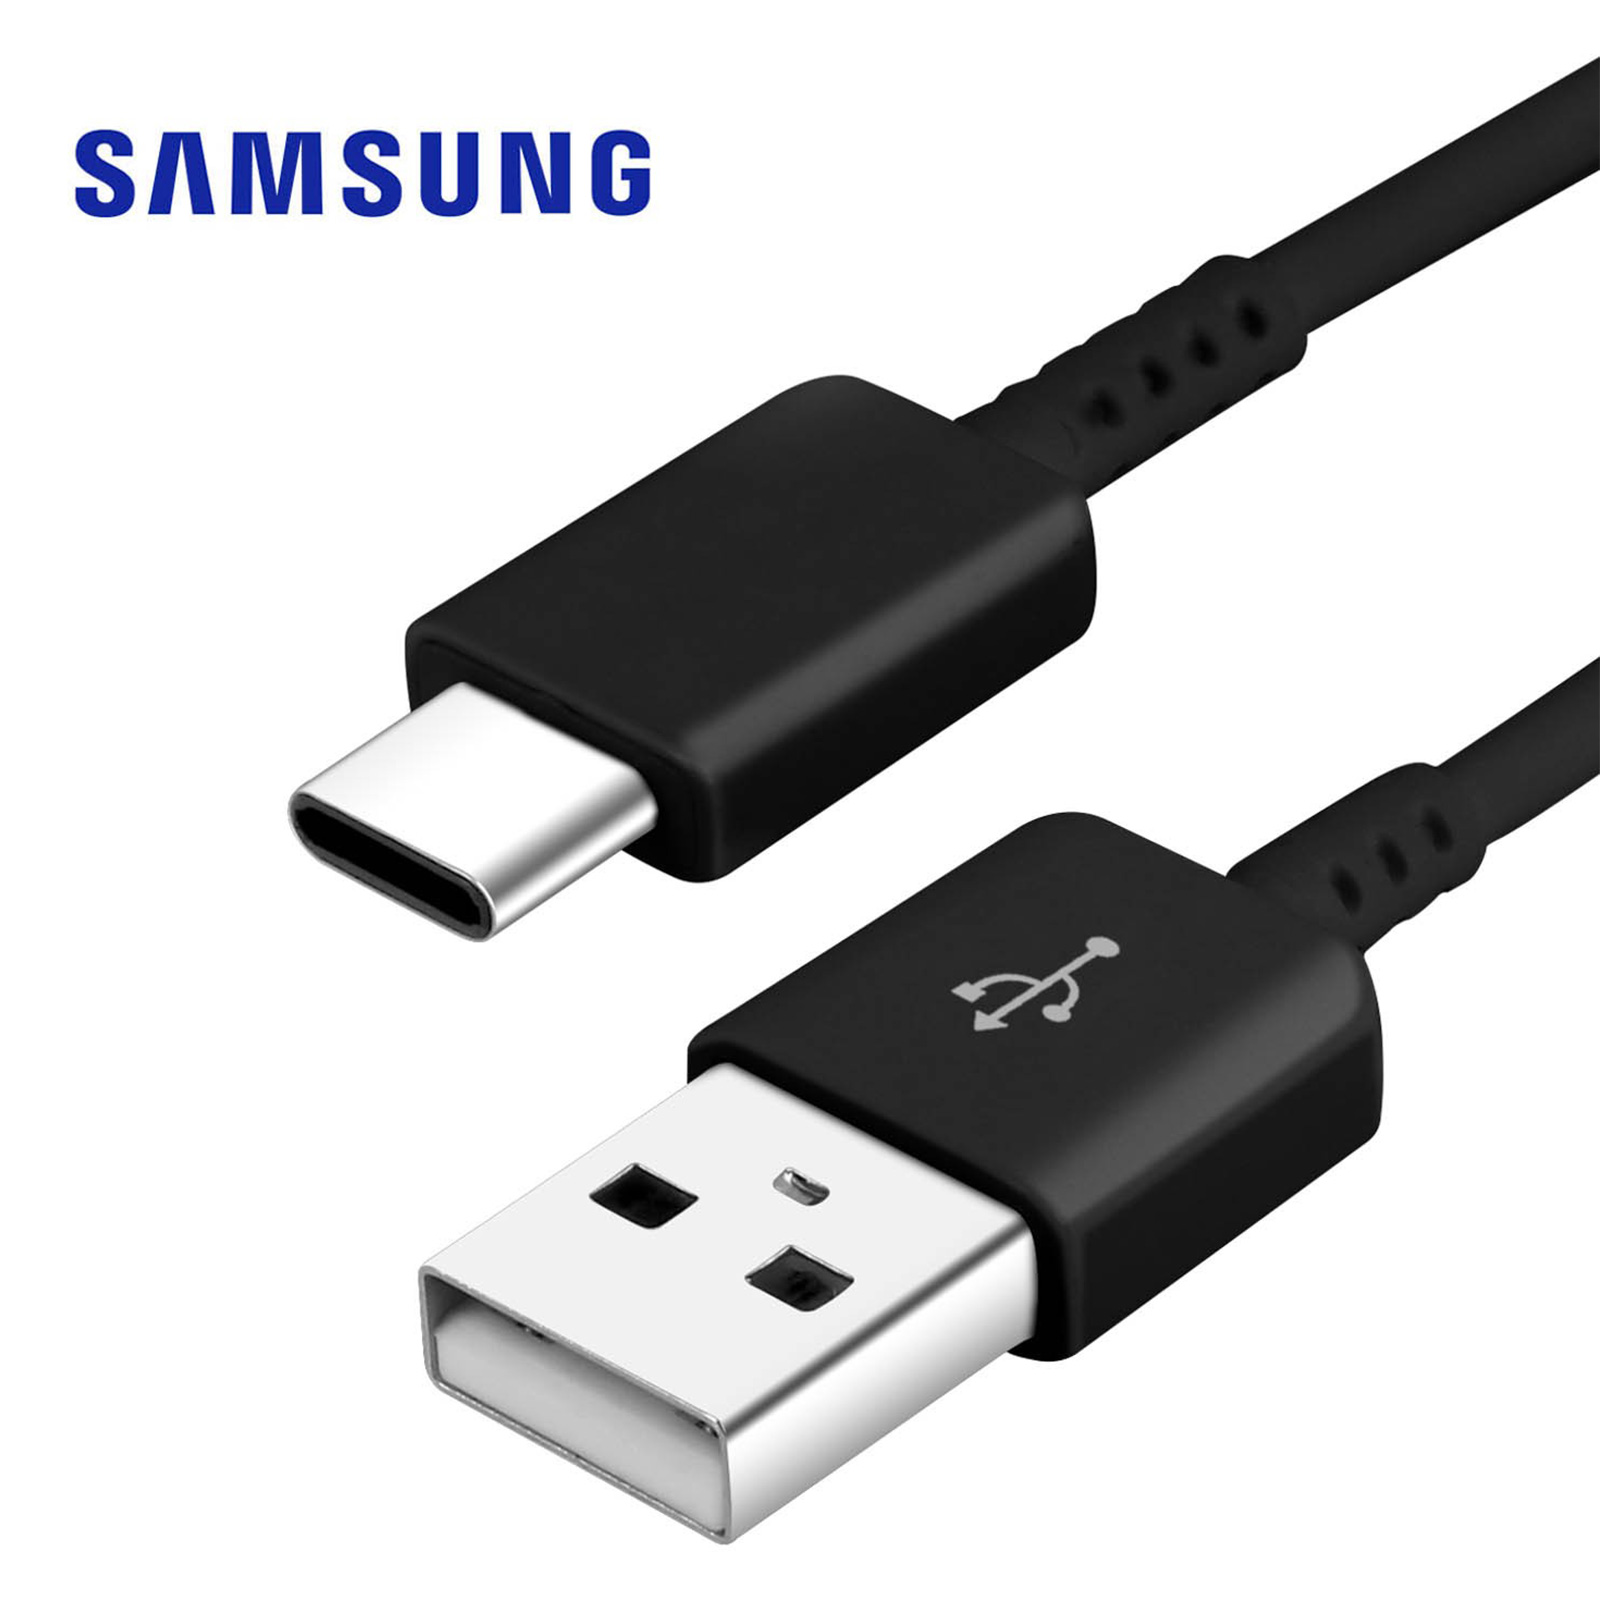 Câble USB Samsung EP-DW700CWE USB type C - Noir - Français